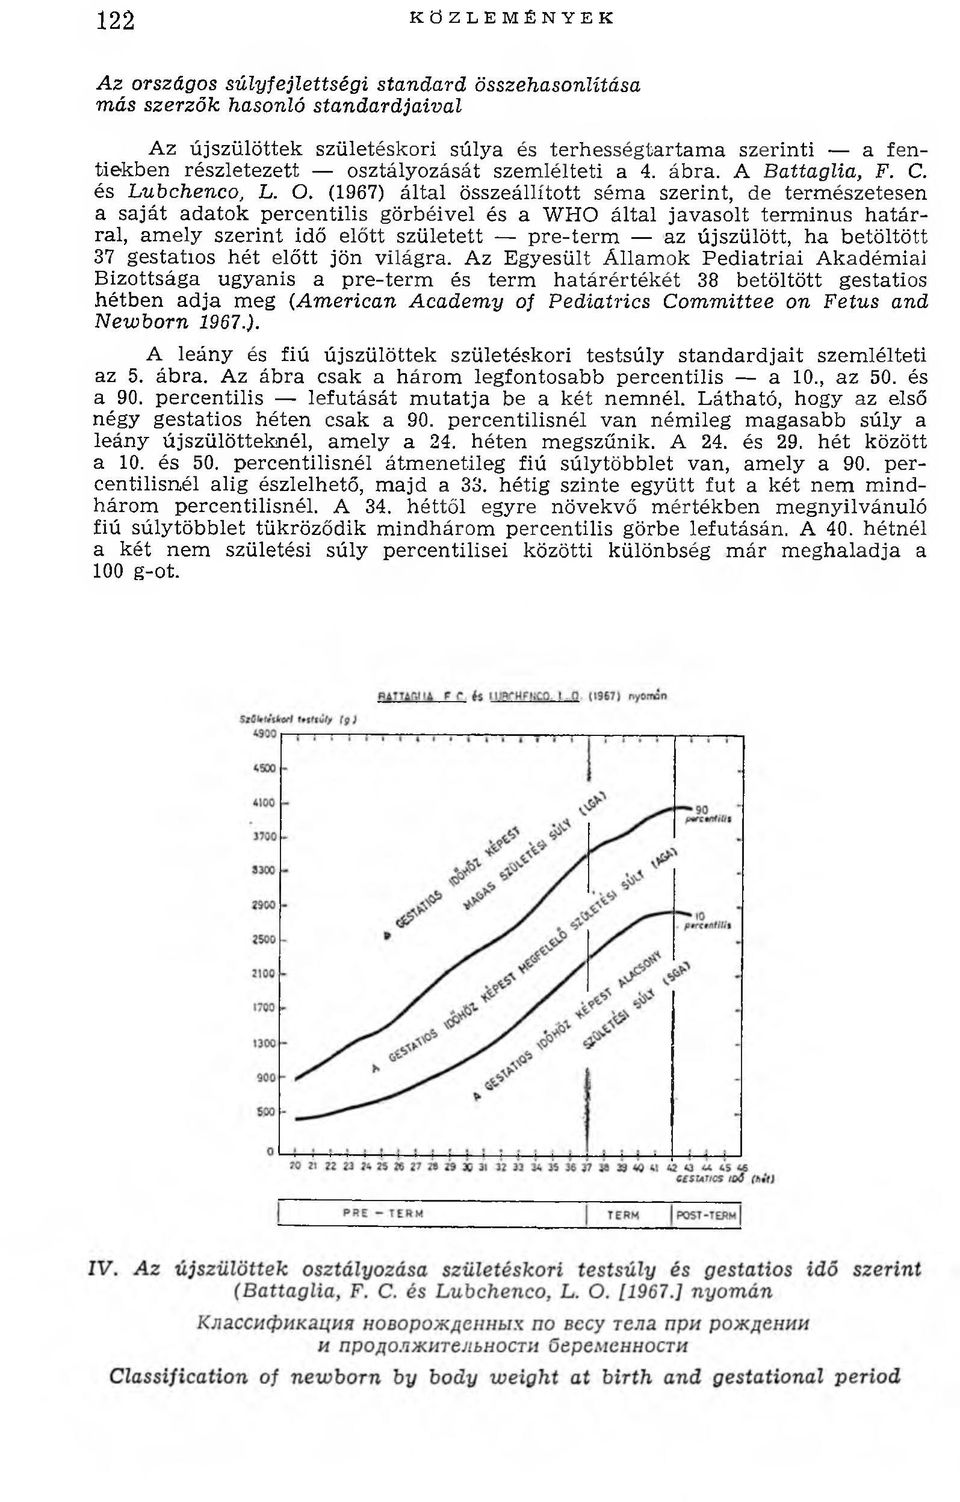 (1967) által összeállított sém a szerint, de term észetesen a saját adatok percentilis görbéivel és a WHO által javasolt term inus h atárral, am ely szerint idő előtt született pre-term az újszülött,